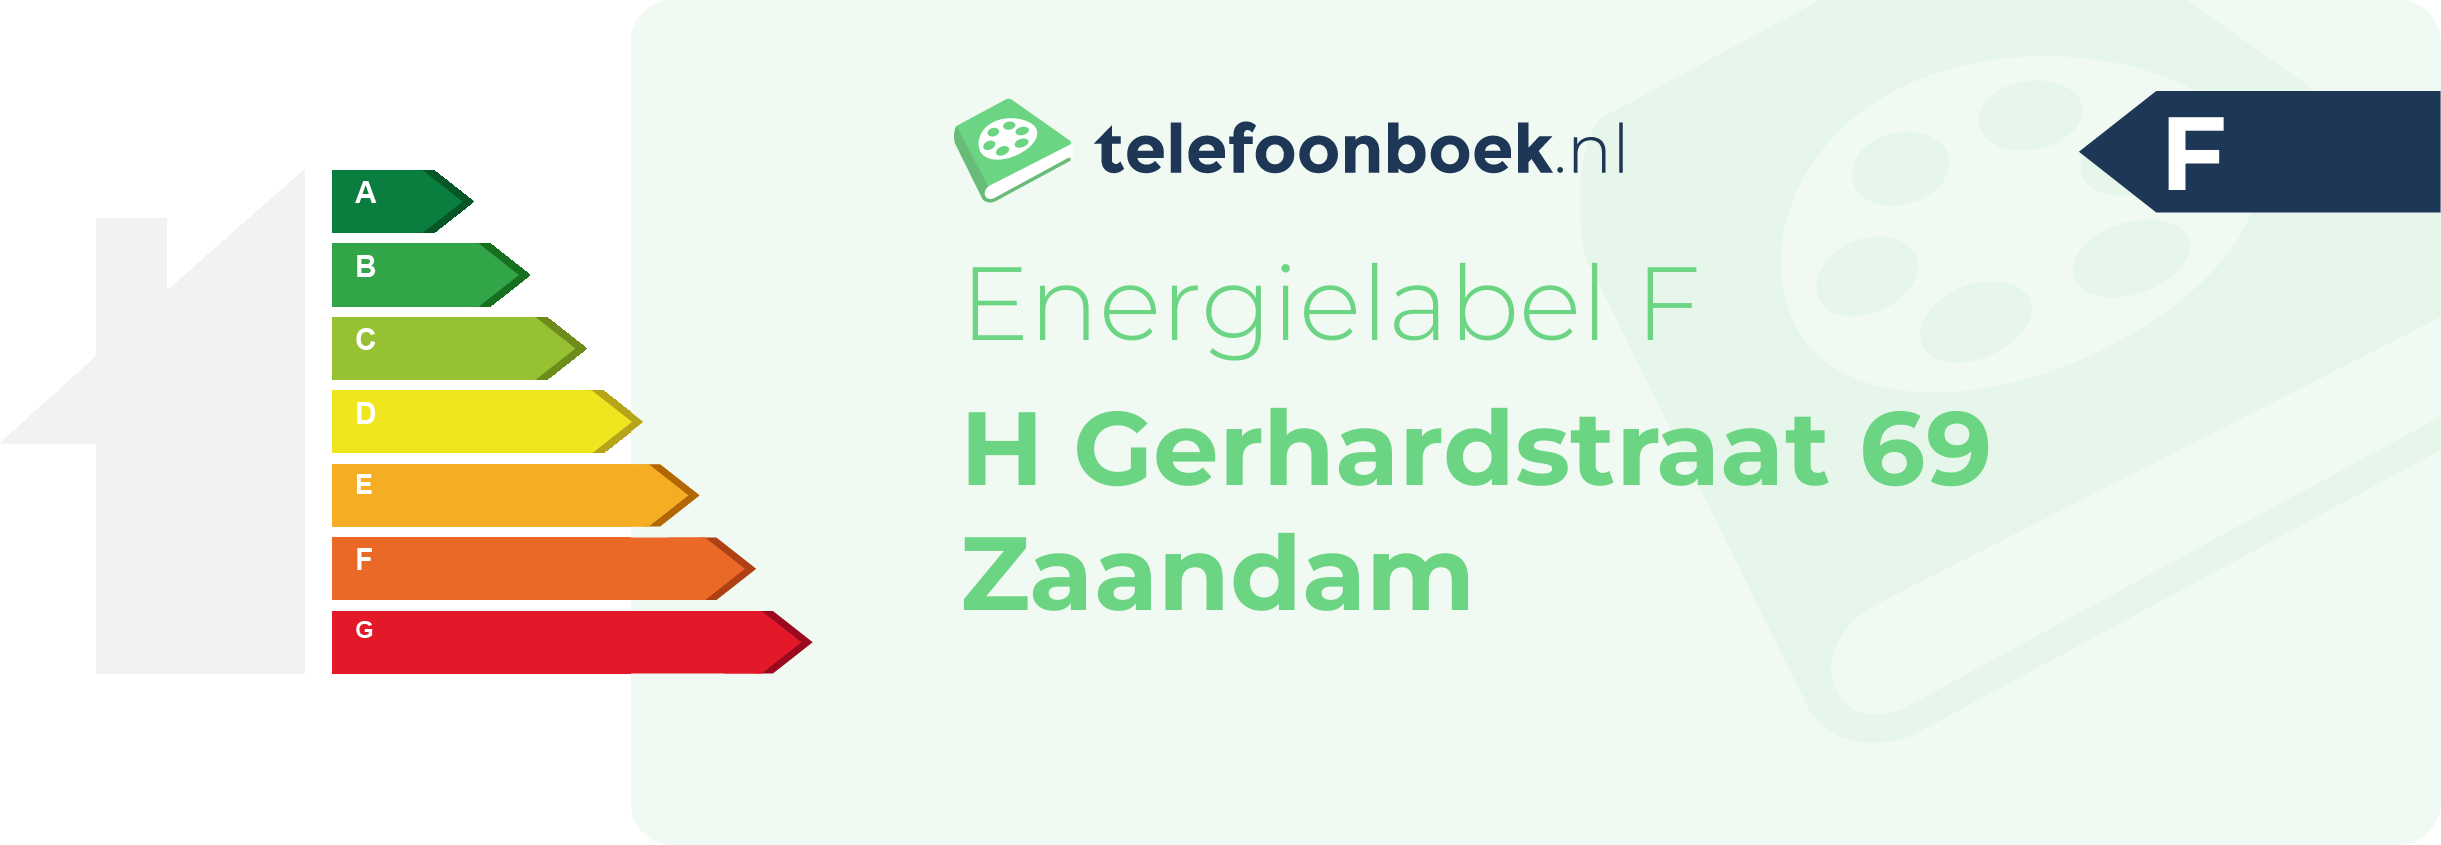 Energielabel H Gerhardstraat 69 Zaandam